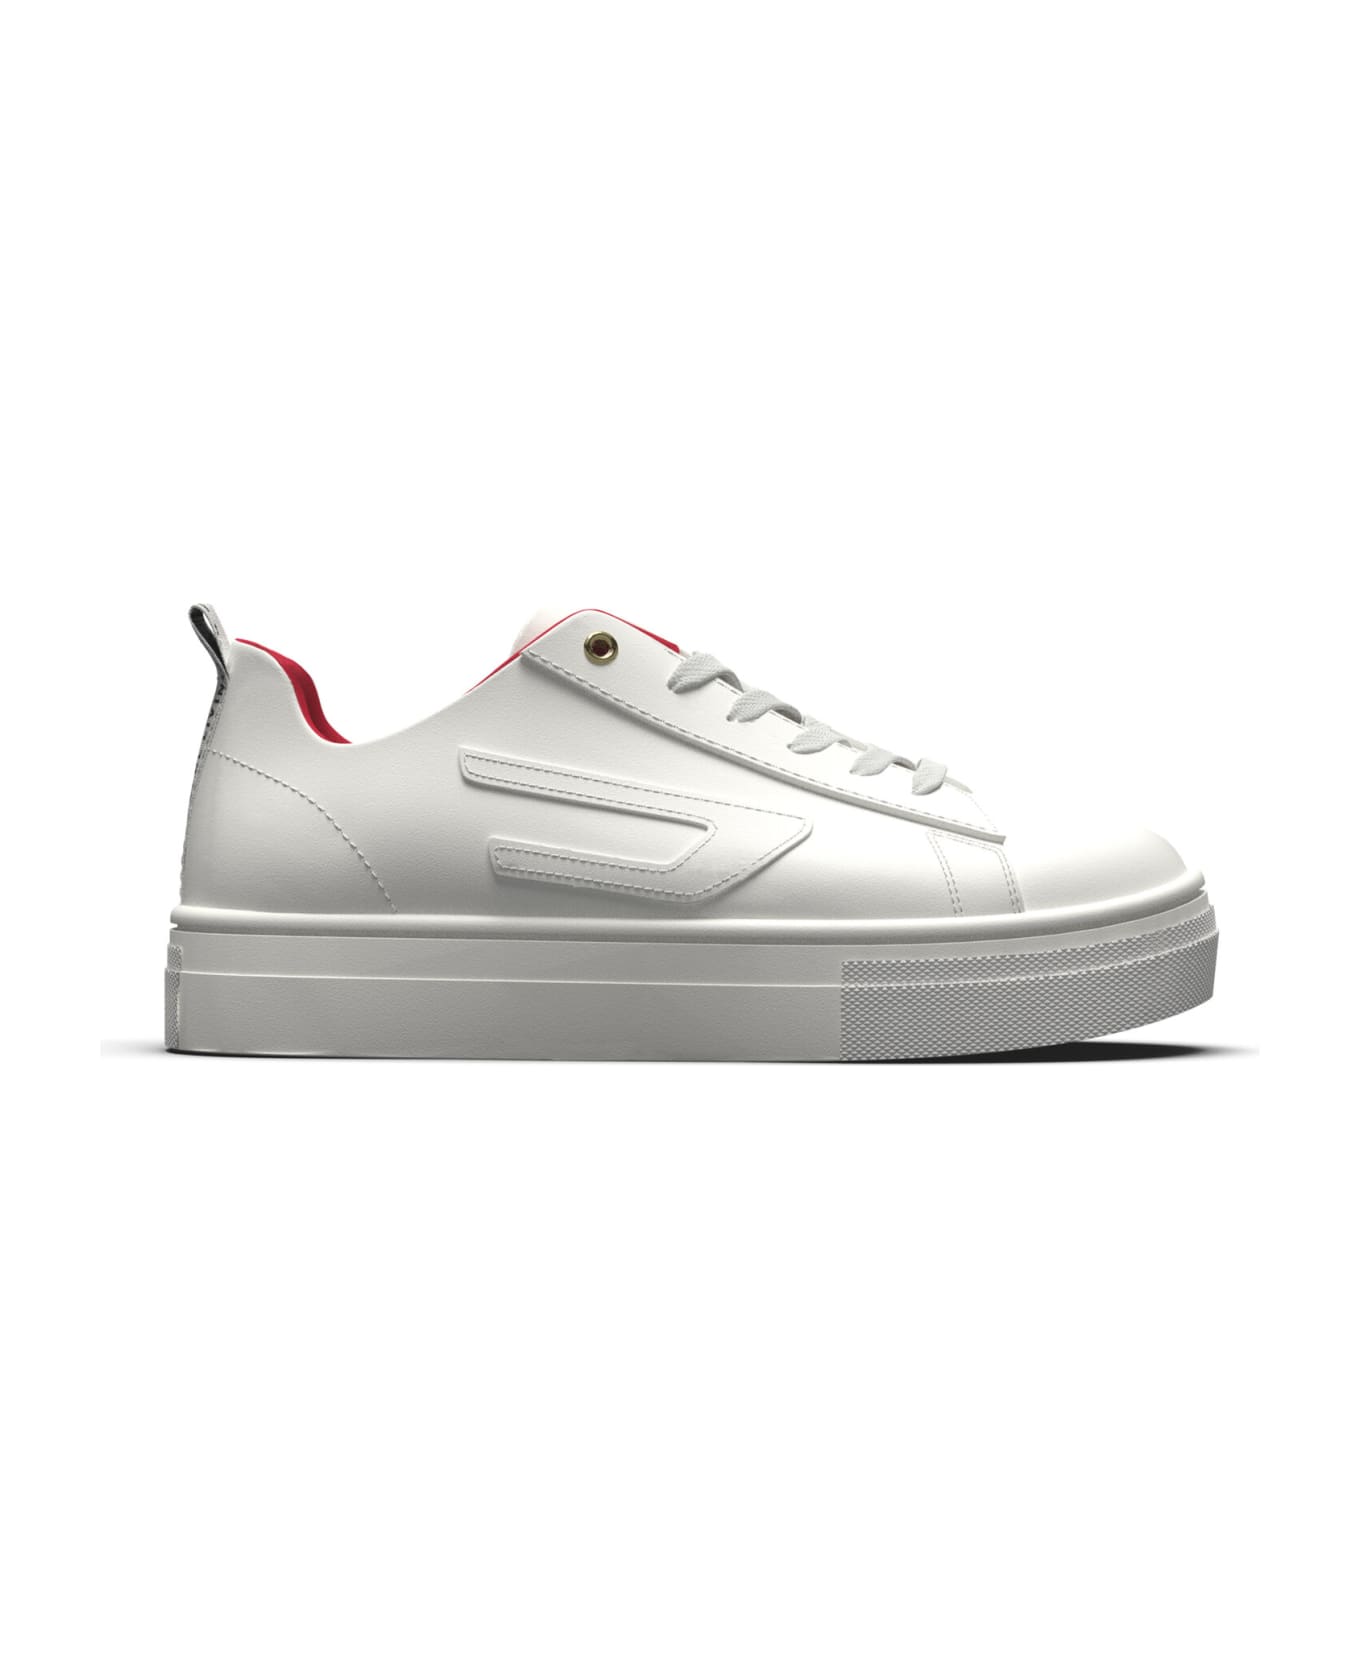 Diesel Vaneela S-vaneela Lc  Sneakers Diesel White Vaneela Low Sneakers With Embossed D - White